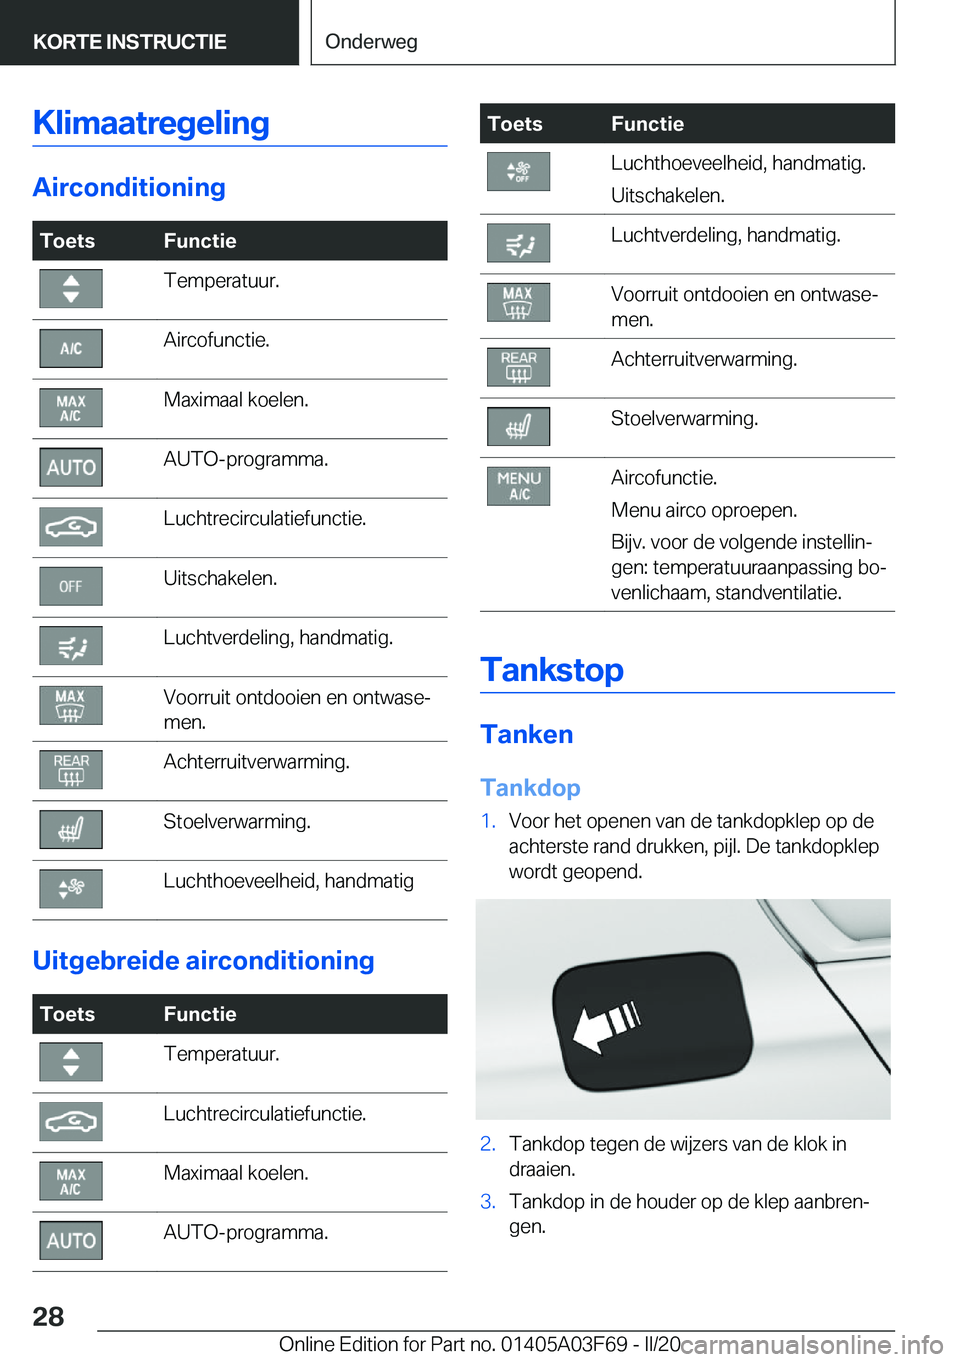 BMW 3 SERIES 2020  Instructieboekjes (in Dutch) �K�l�i�m�a�a�t�r�e�g�e�l�i�n�g
�A�i�r�c�o�n�d�i�t�i�o�n�i�n�g
�T�o�e�t�s�F�u�n�c�t�i�e�T�e�m�p�e�r�a�t�u�u�r�.�A�i�r�c�o�f�u�n�c�t�i�e�.�M�a�x�i�m�a�a�l��k�o�e�l�e�n�.�A�U�T�O�-�p�r�o�g�r�a�m�m�a�.�L